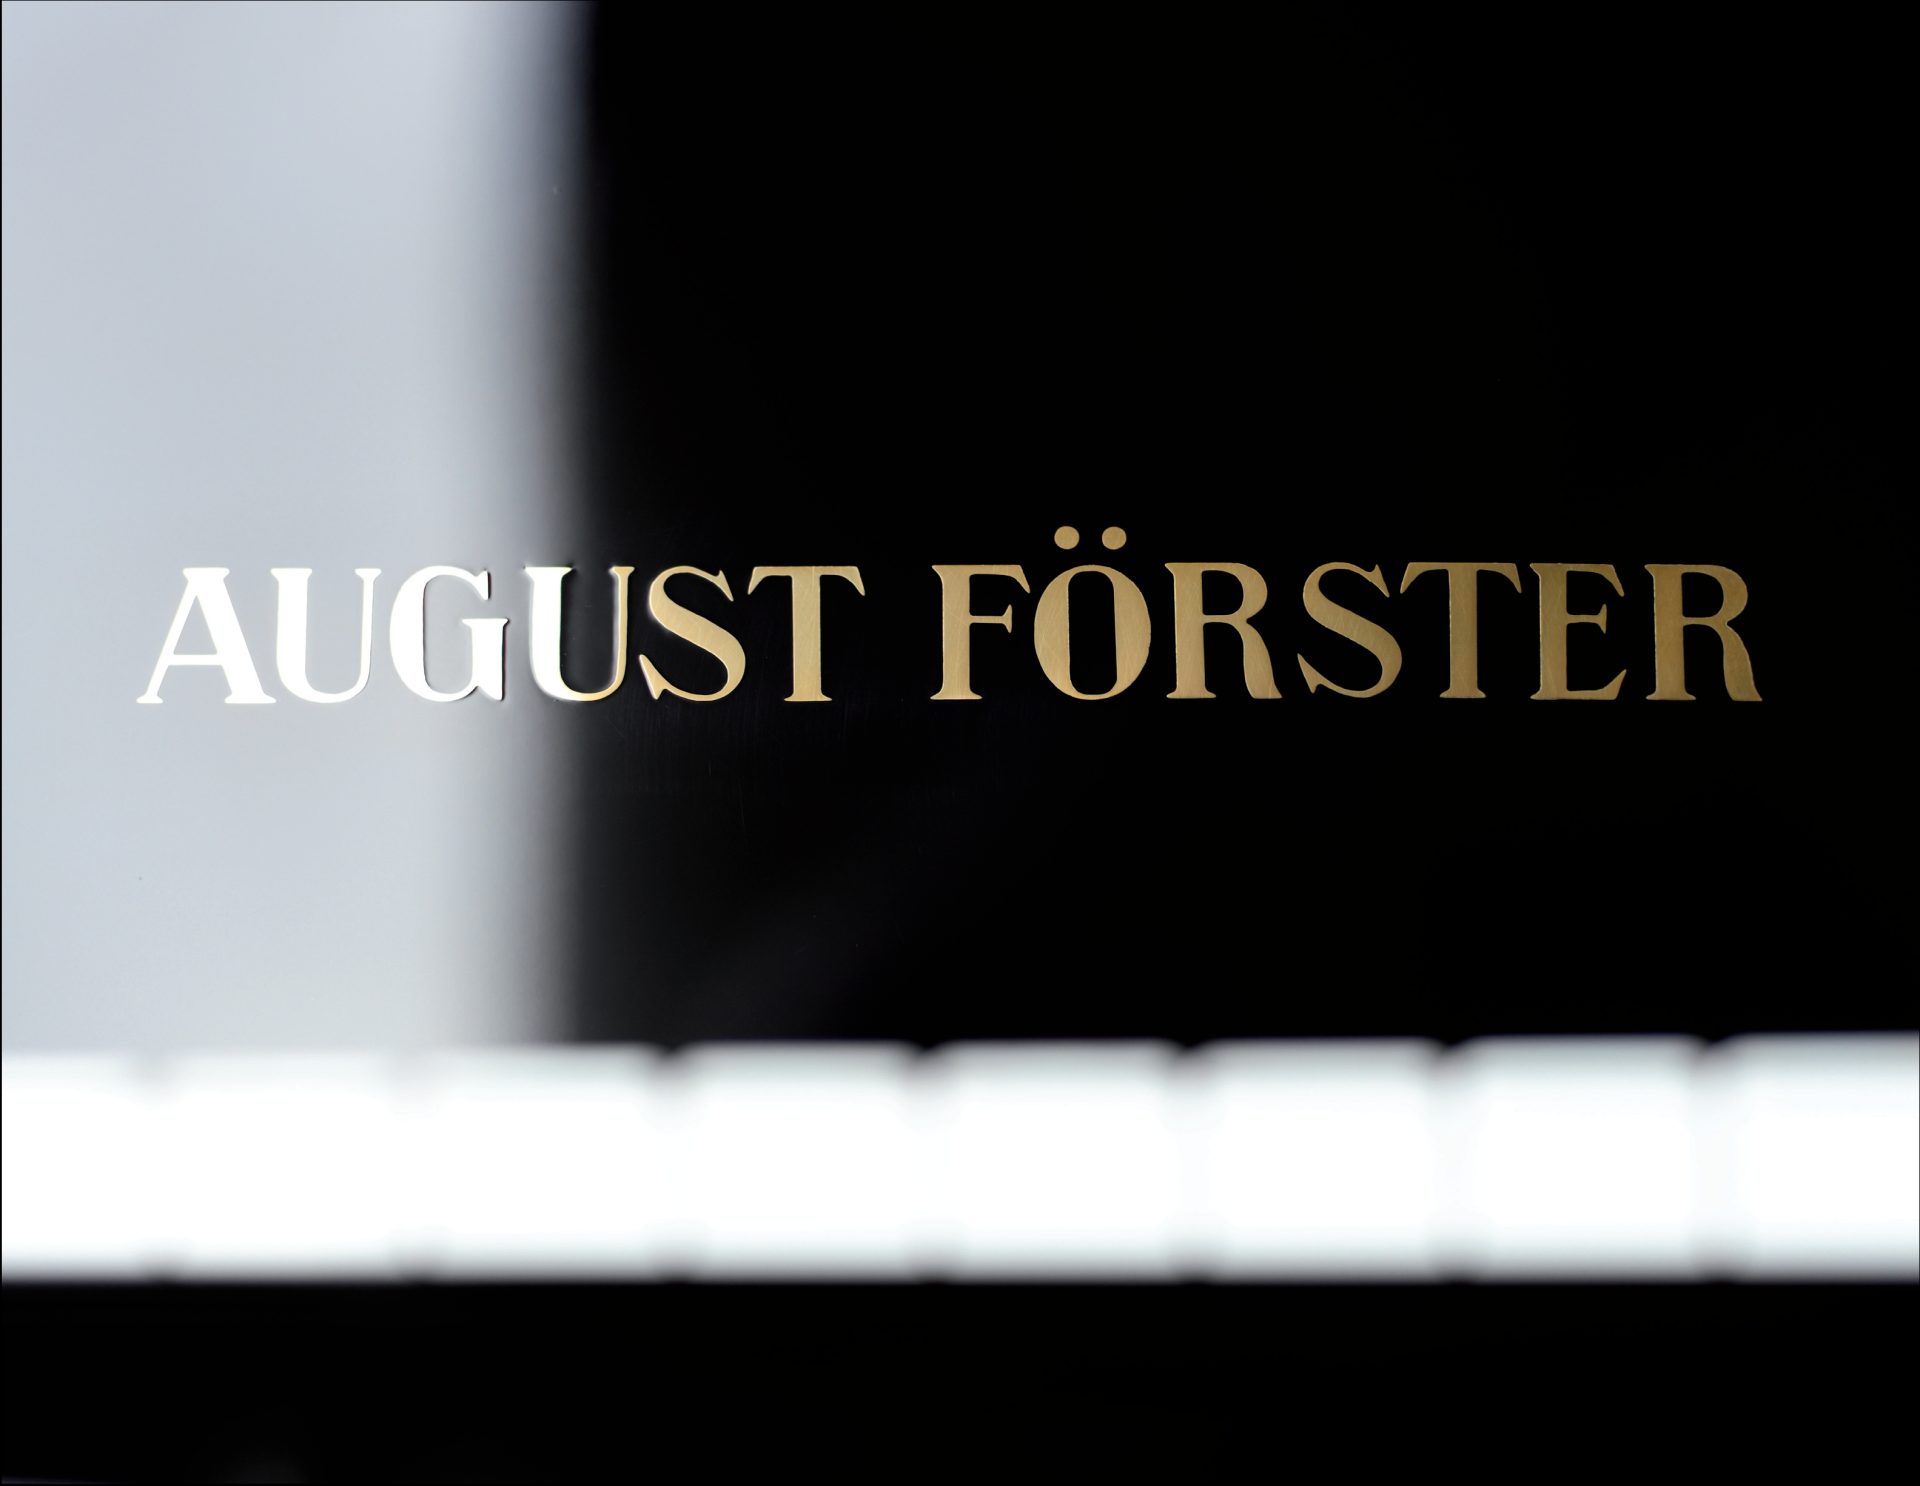 August Förster
116 D